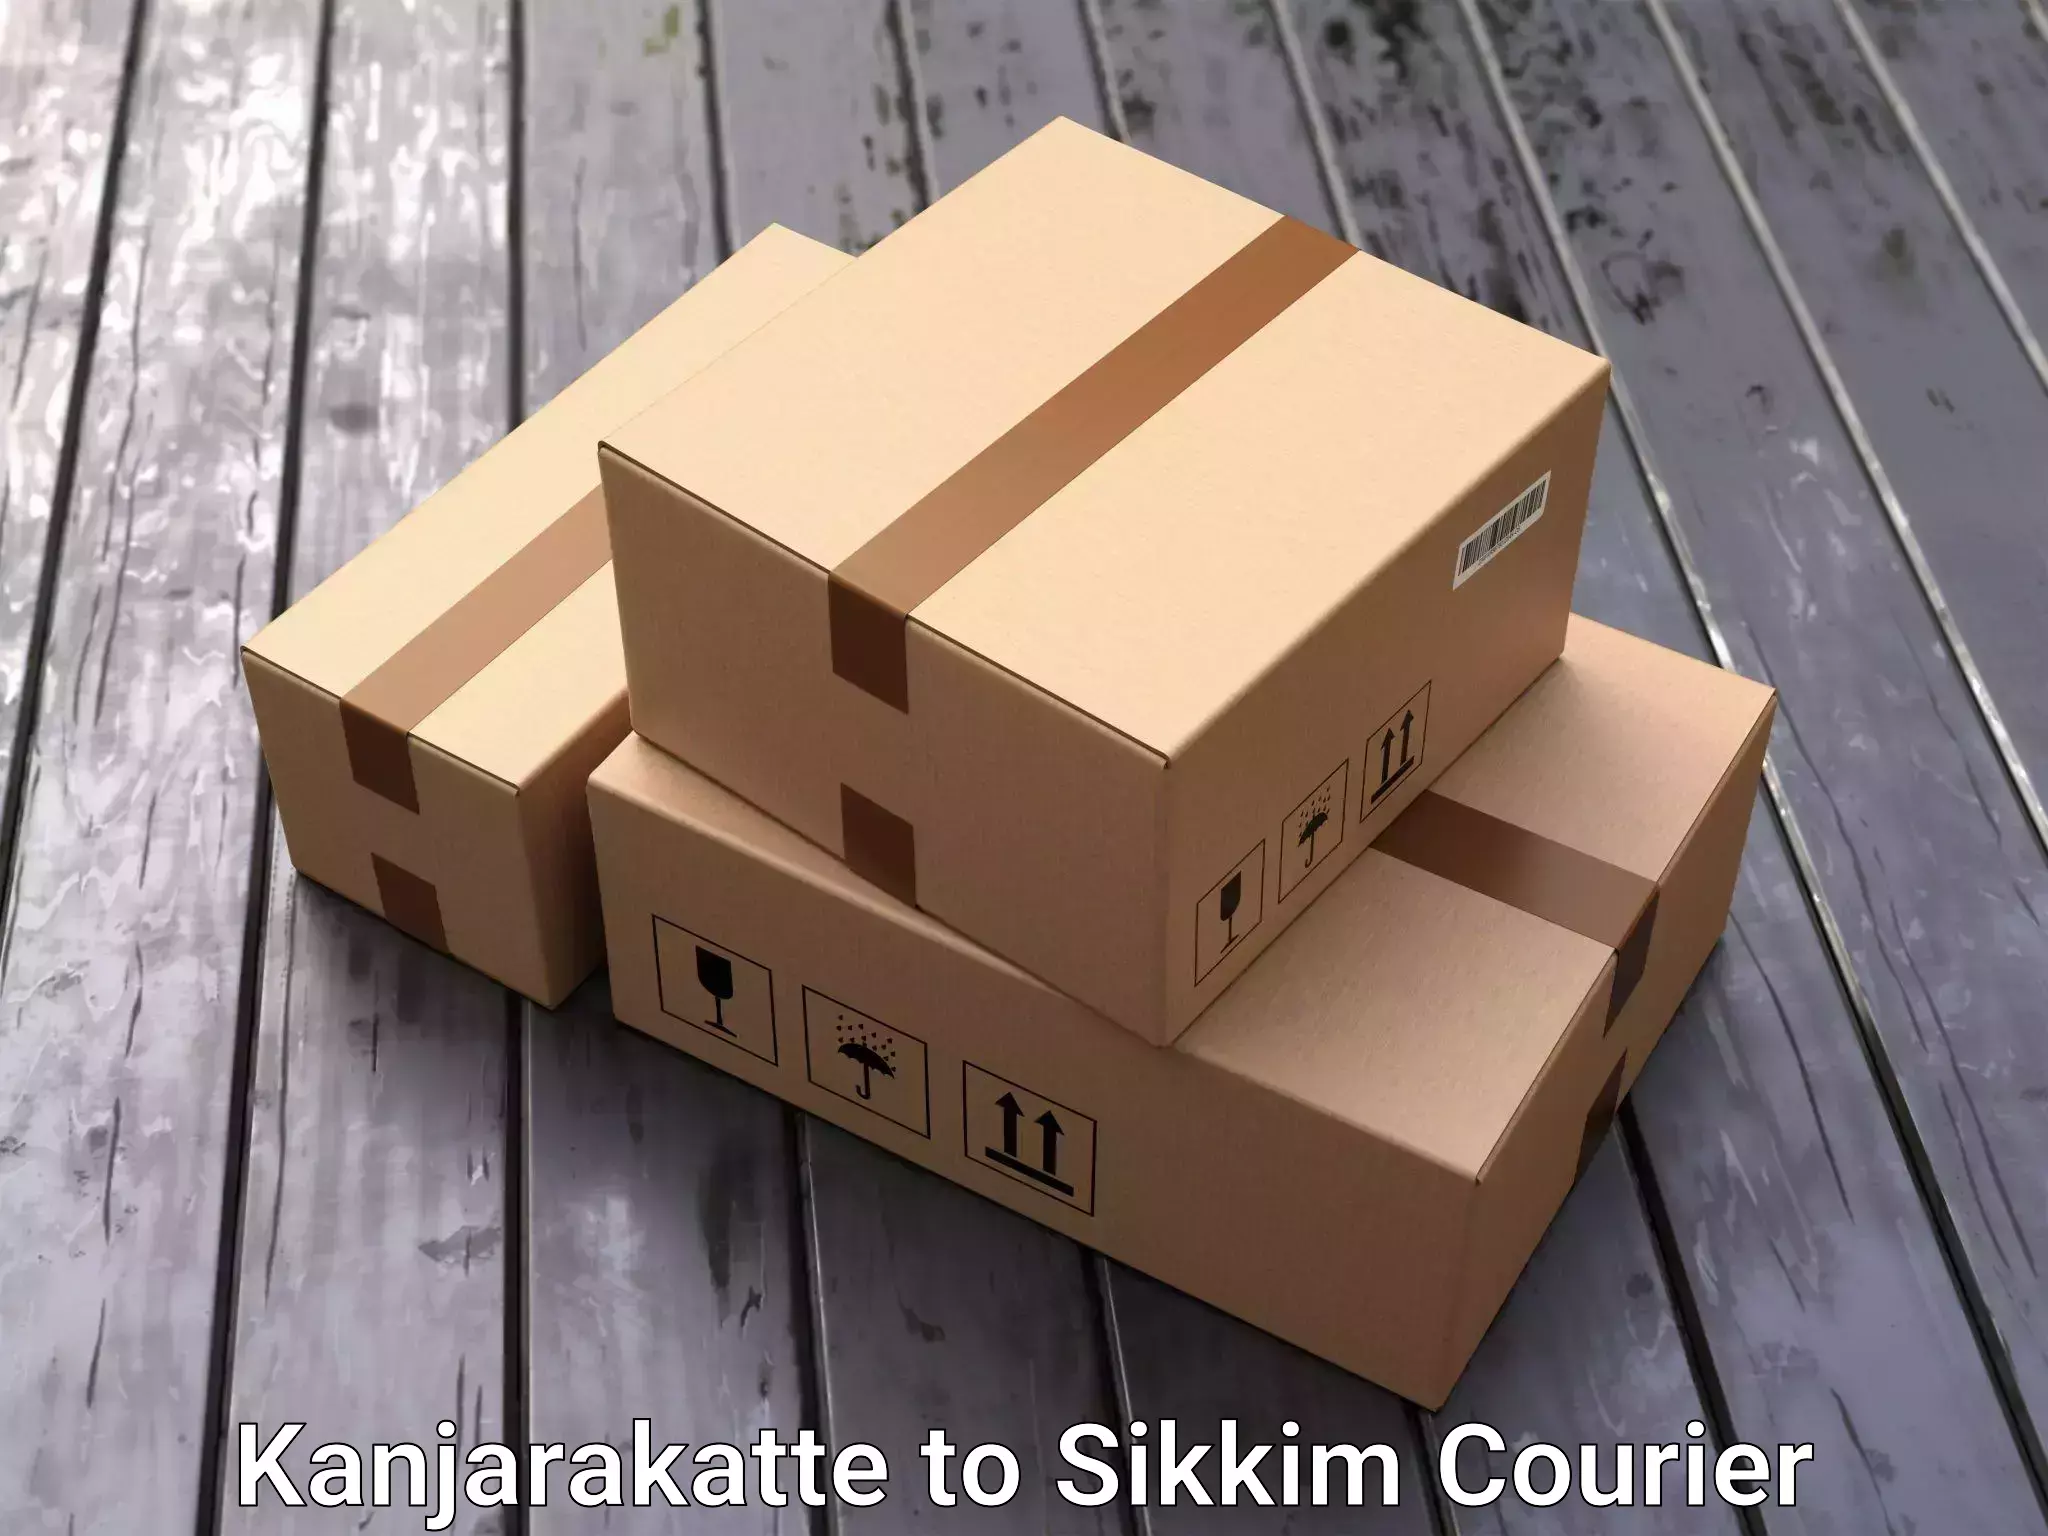 Efficient furniture transport Kanjarakatte to East Sikkim